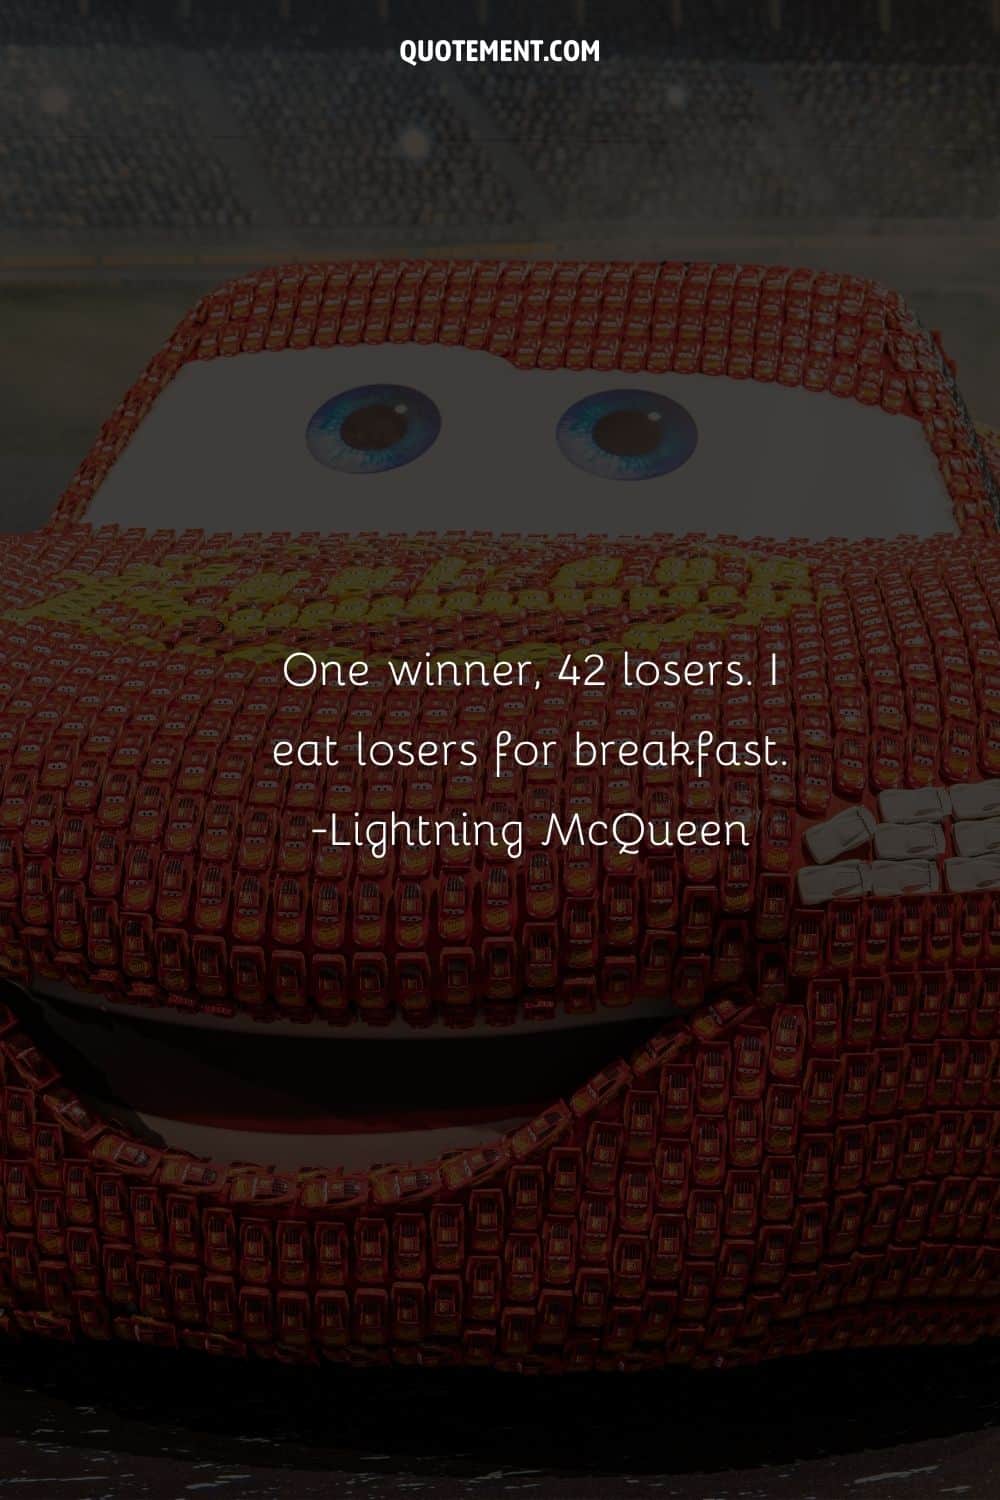 “One winner, 42 losers. I eat losers for breakfast.” ― Lightning McQueen